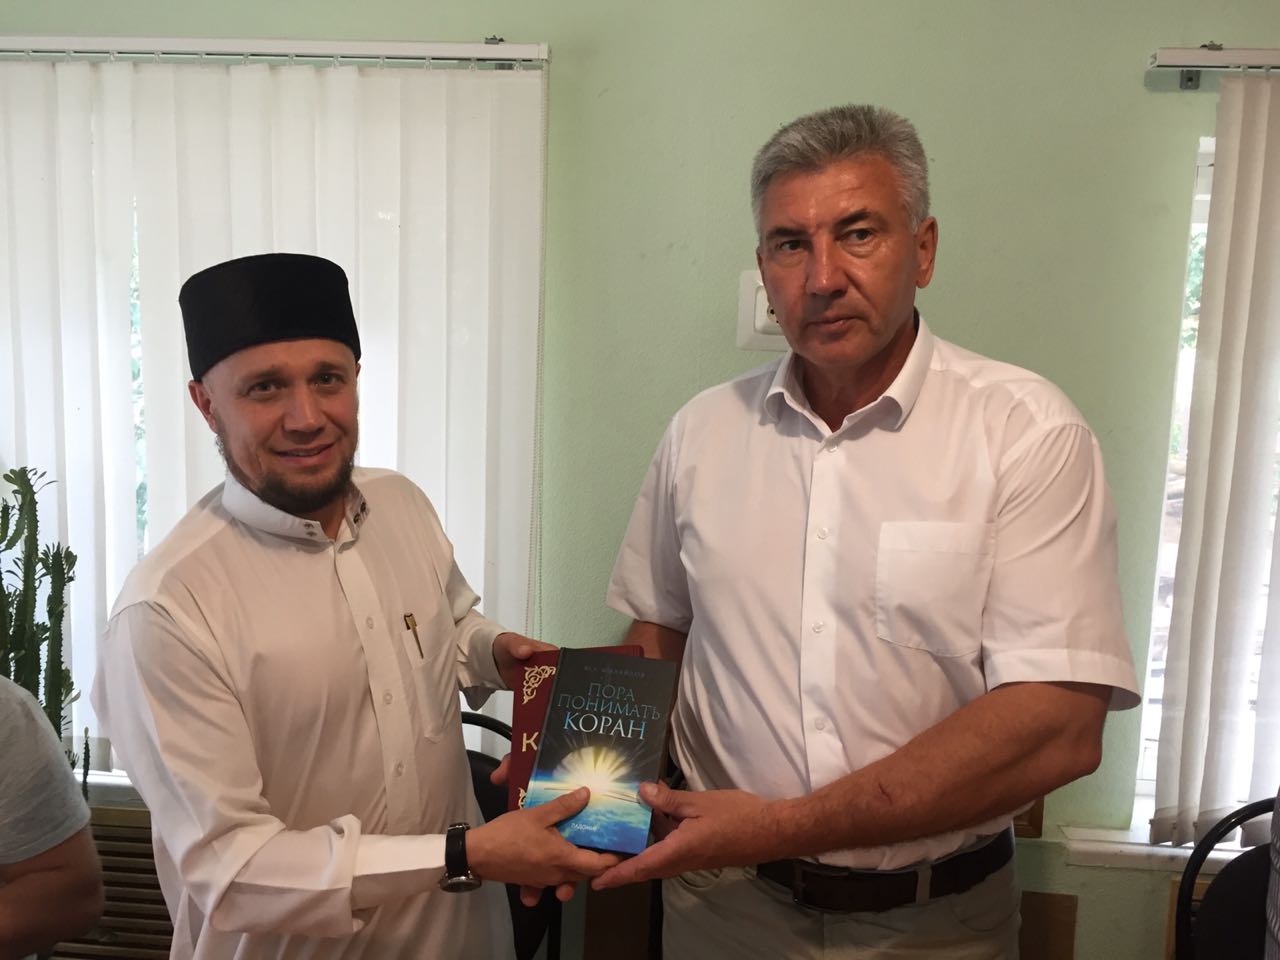 Сергею Юркину презентовали книгу «Пора понимать Коран»